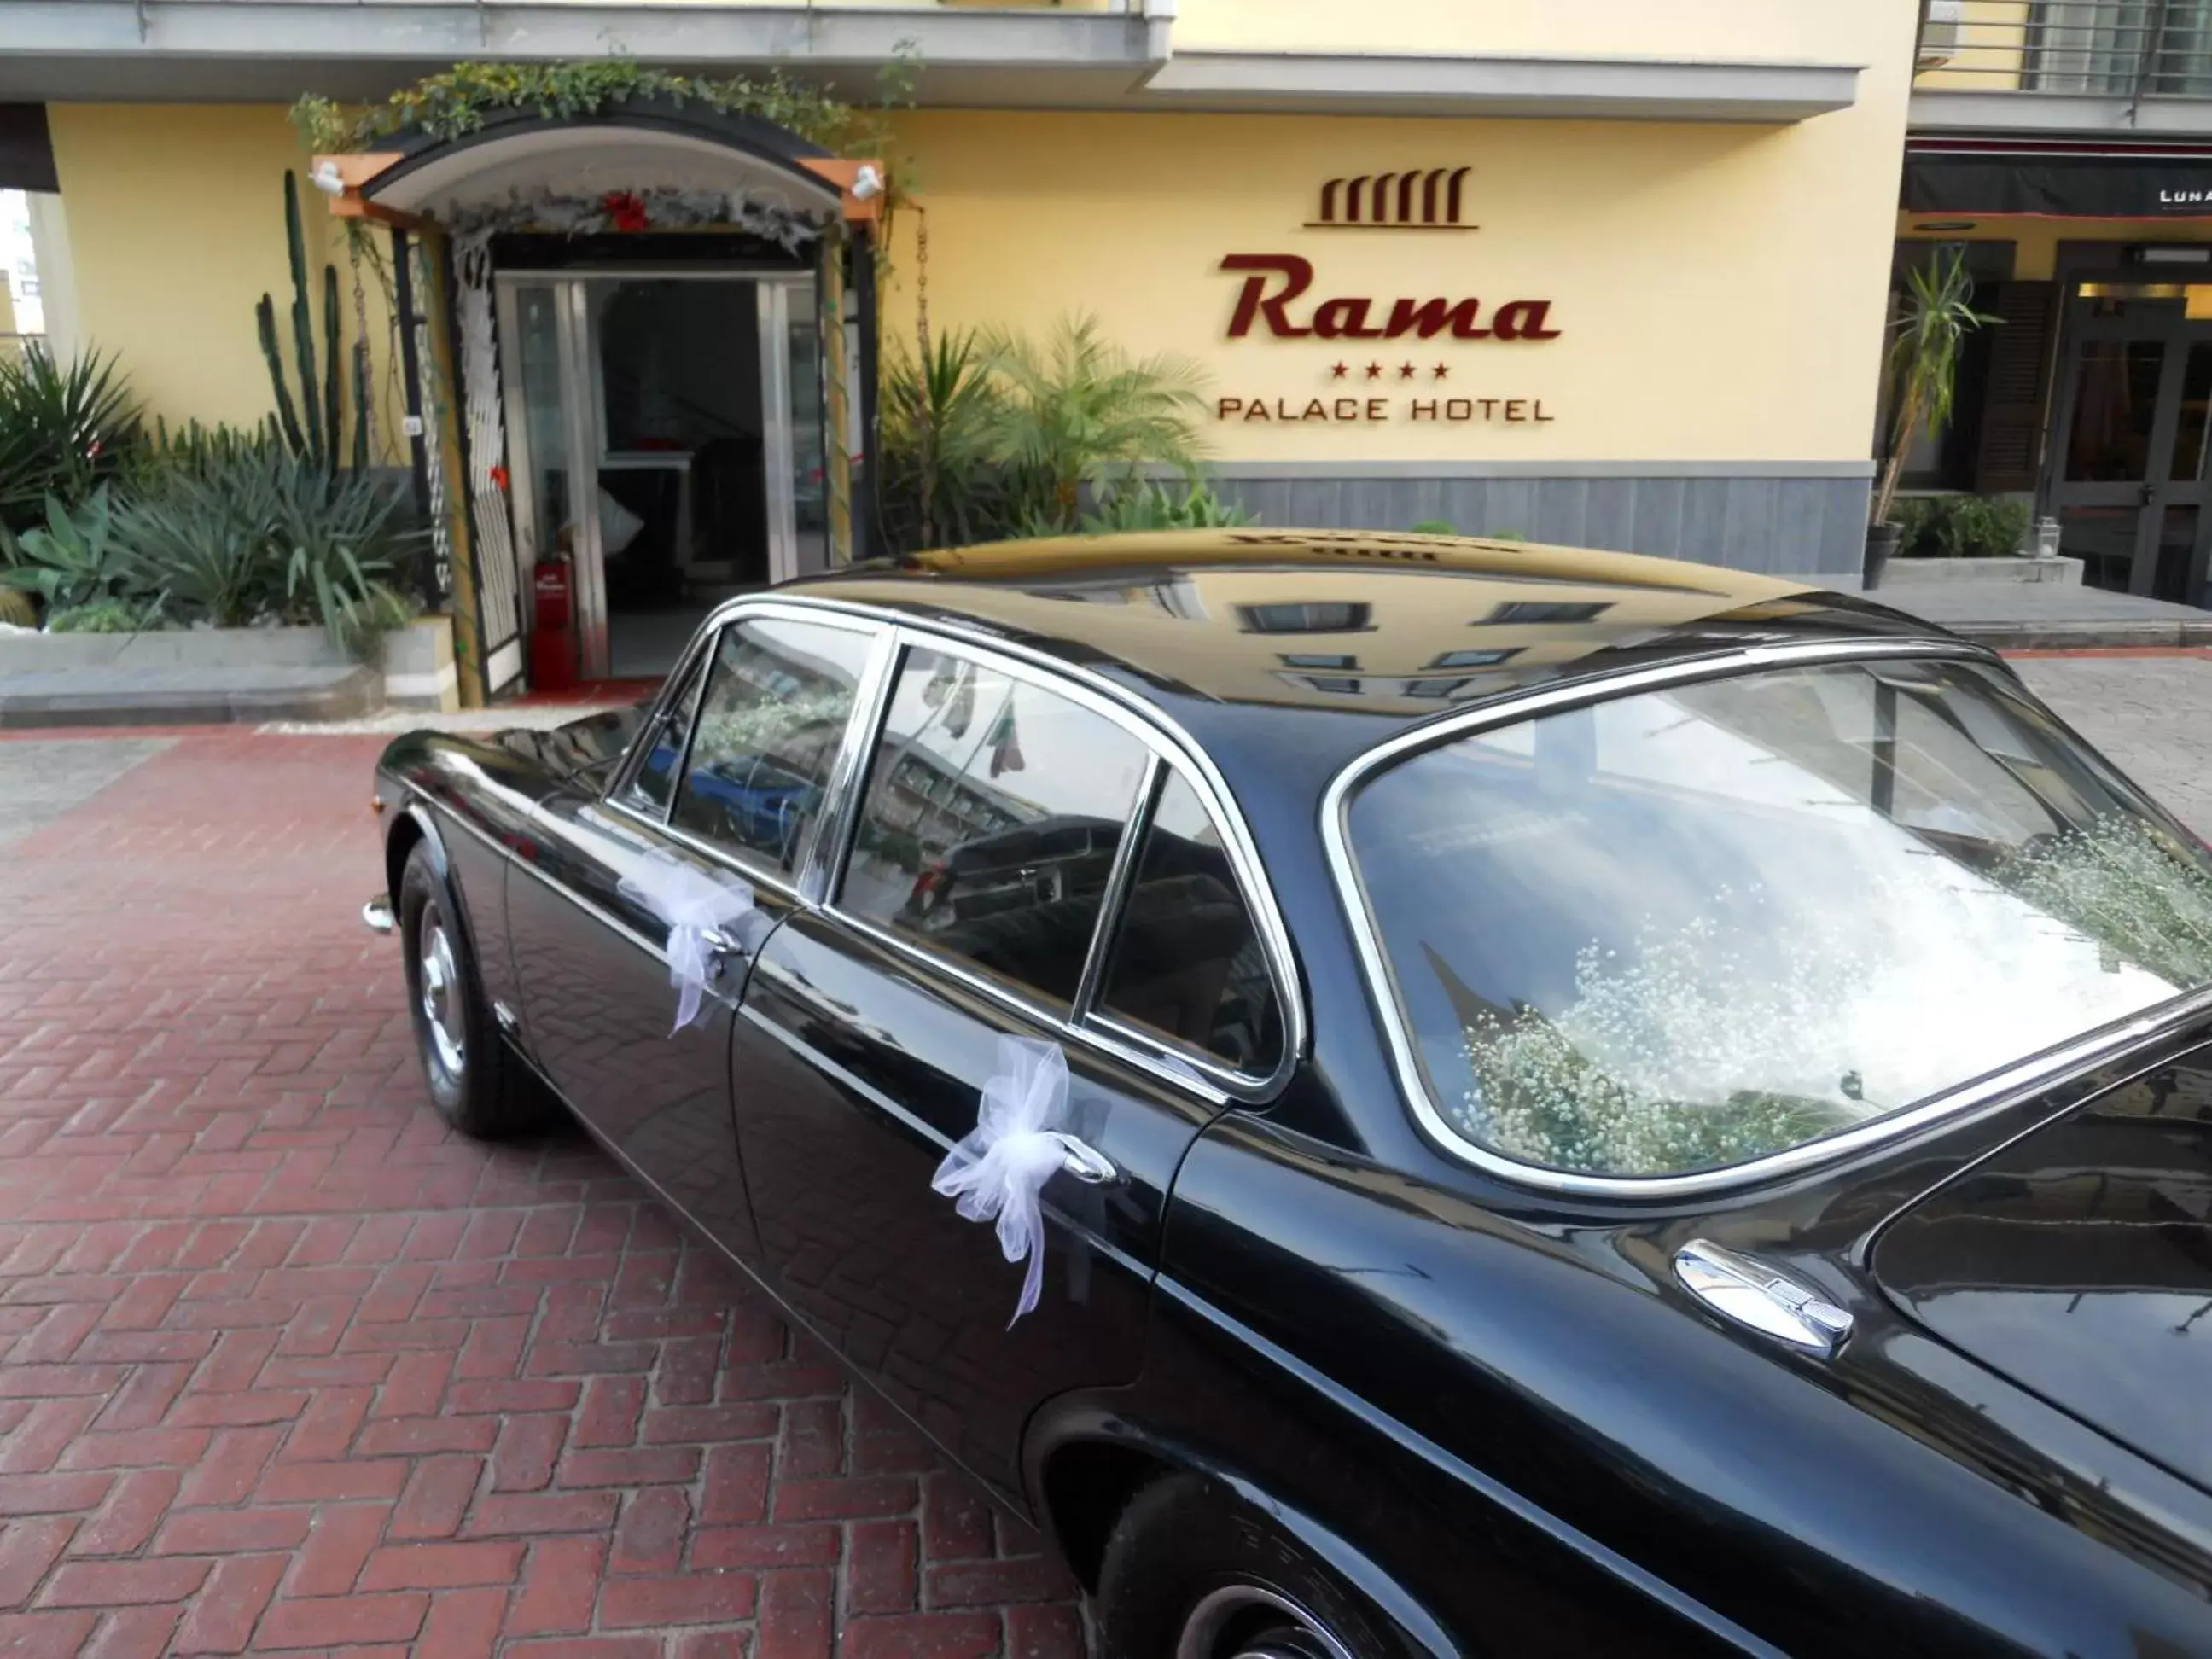 Facade/entrance in Rama Palace Hotel